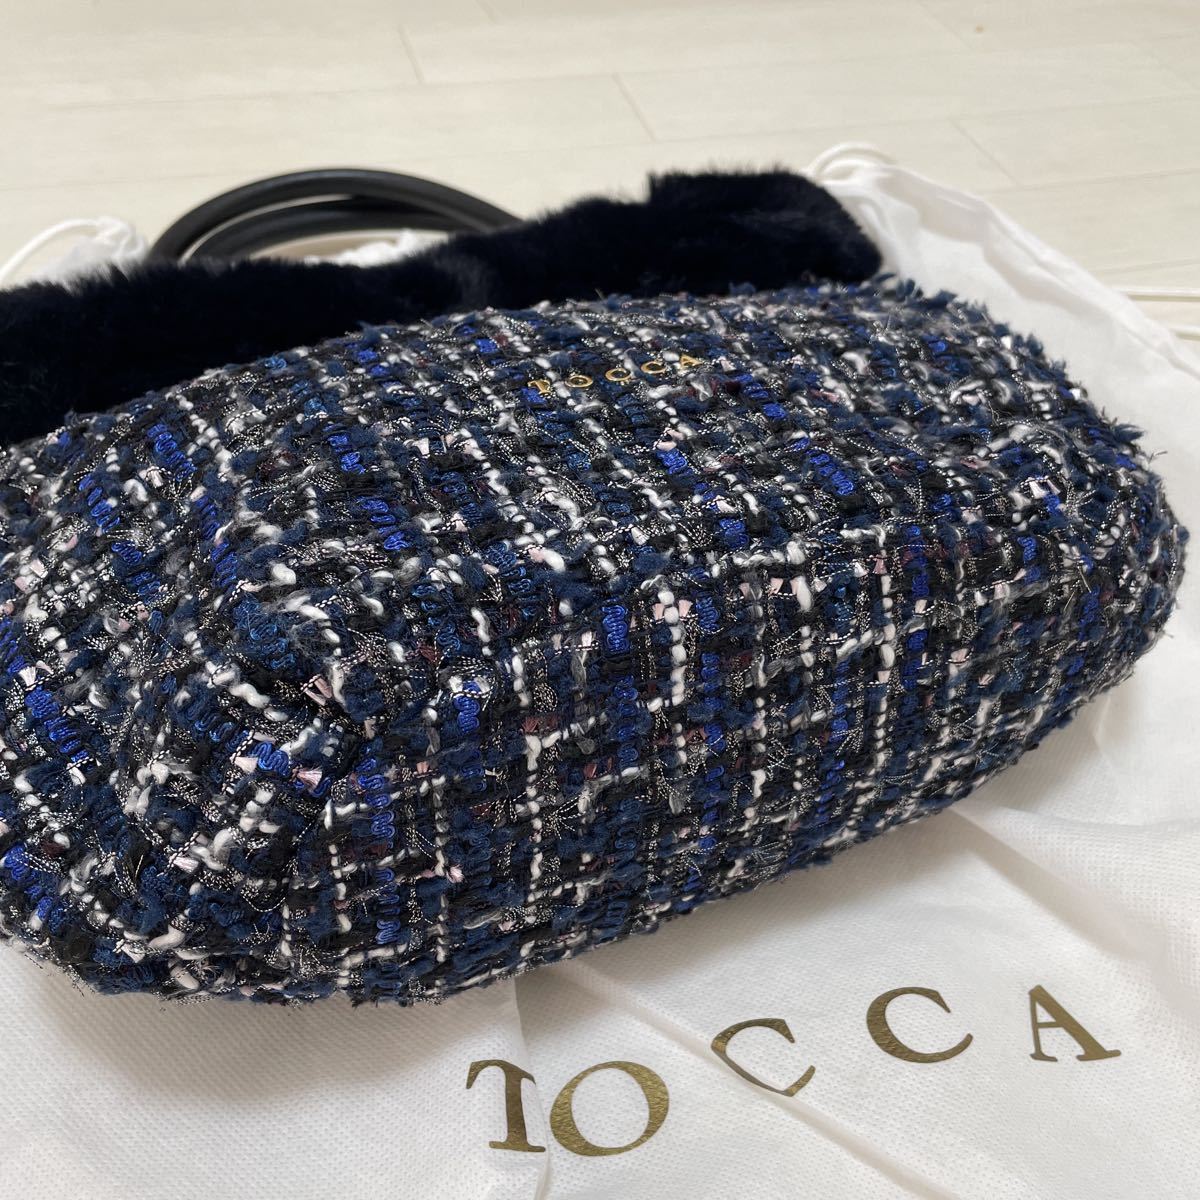 トッカ TOCCA ツイード ファー付きバッグ ハンドバッグ 鞄 フォーマル ネイビー/ブラック 美品_画像4